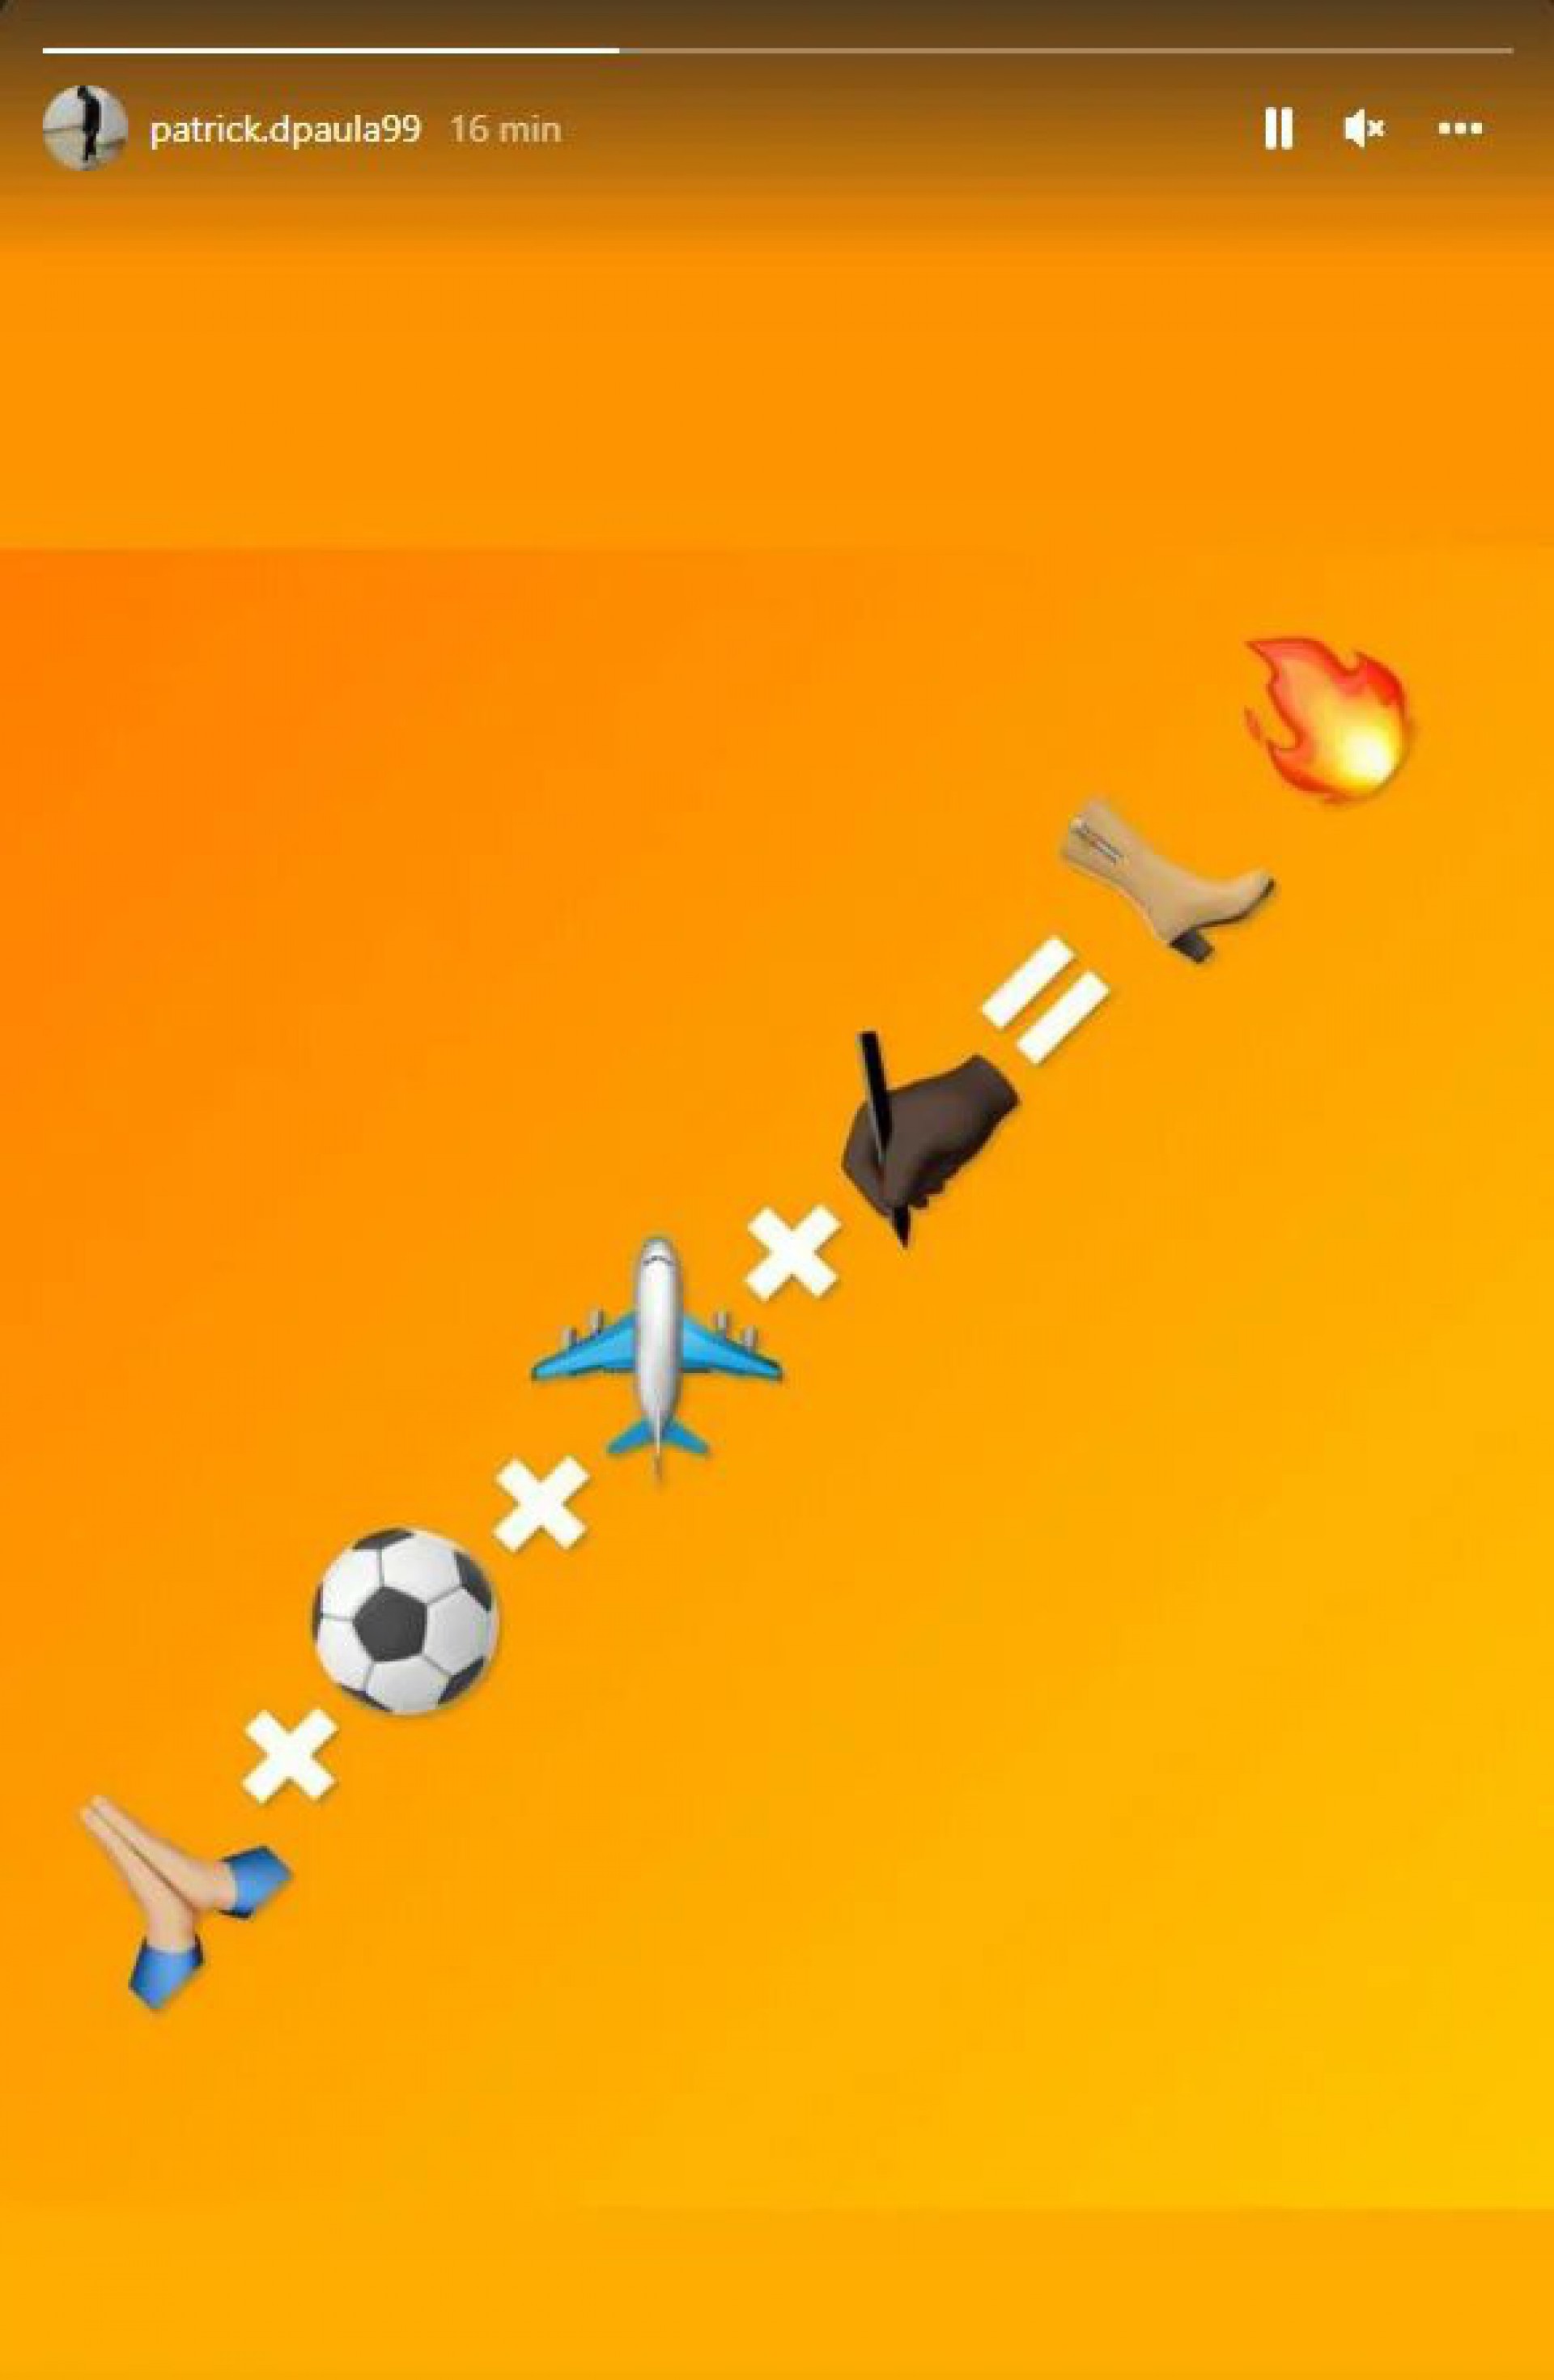 Patrick de Paula posta emojis e anima torcida do Botafogo - Foto: Reprodução/Instagram